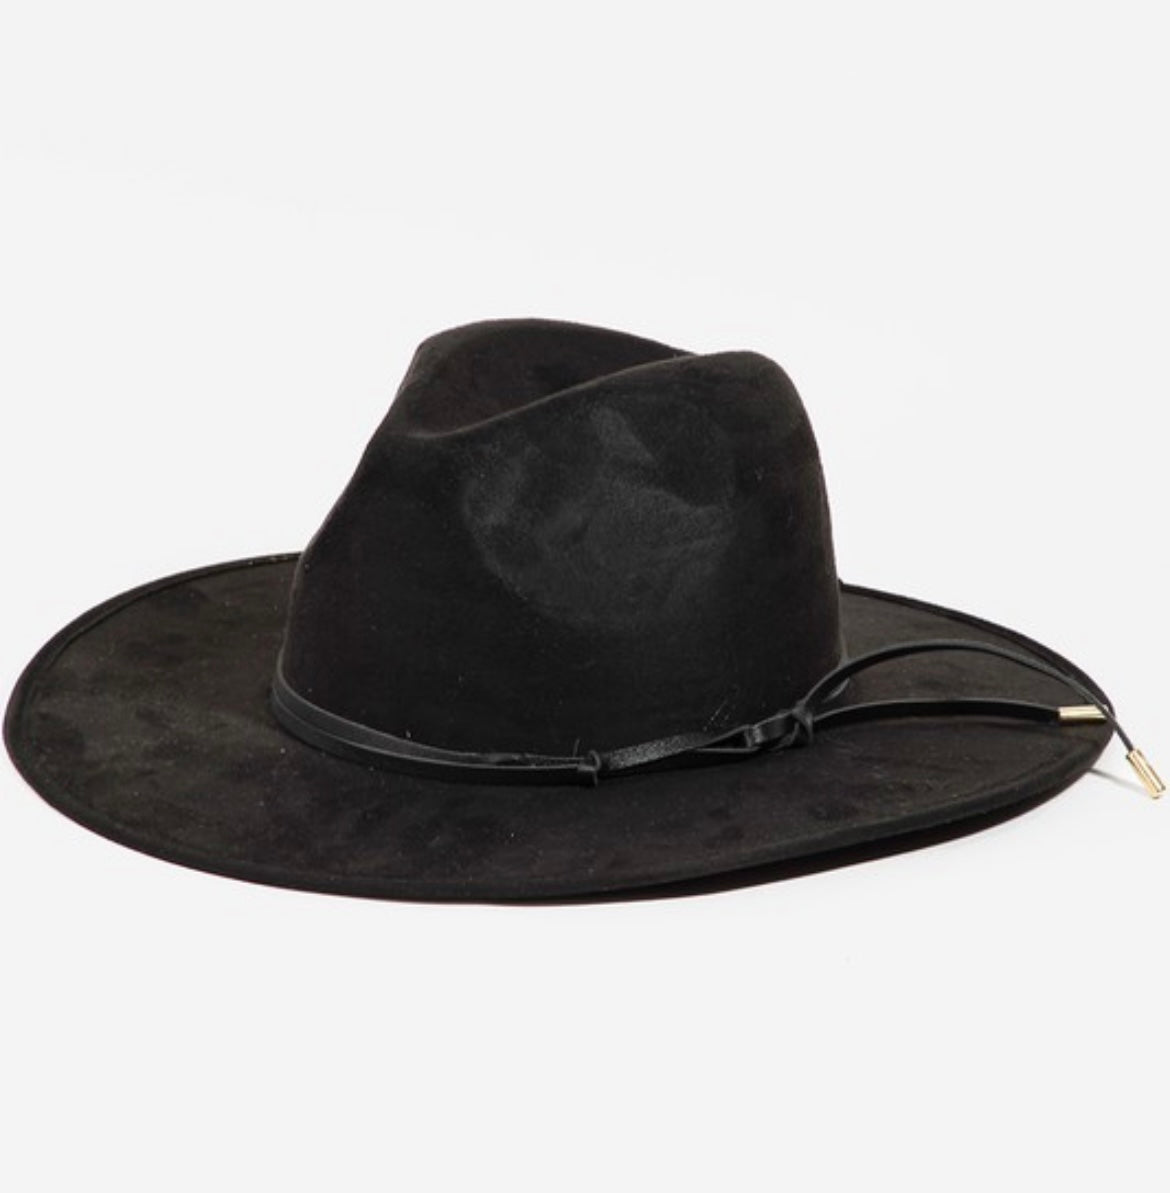 Felt Cowboy Hat in Black